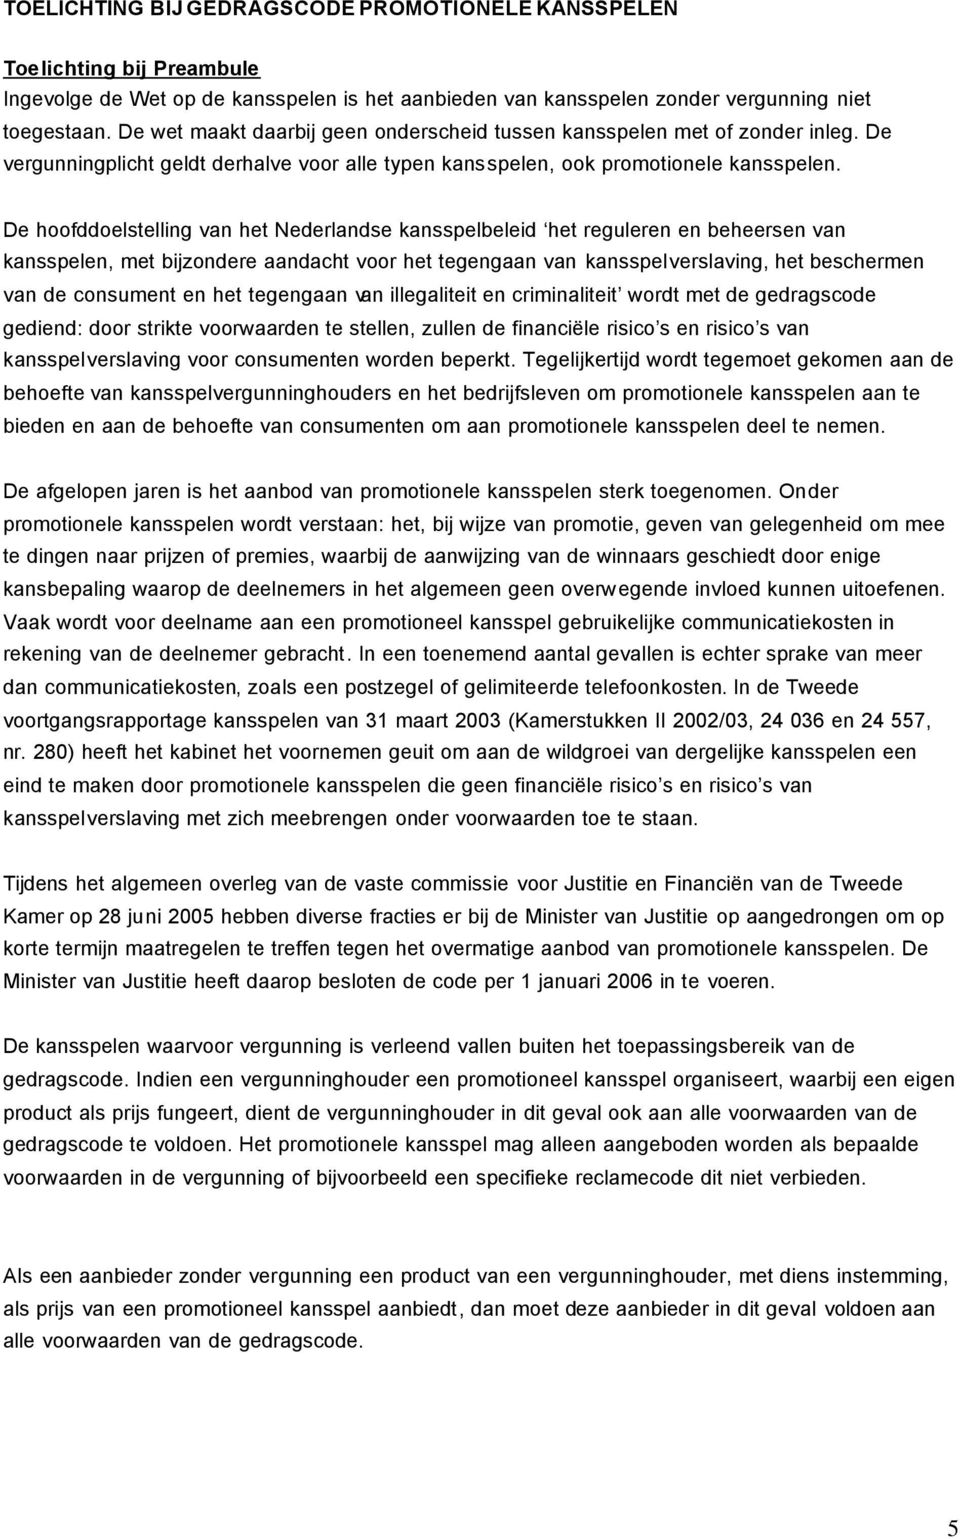 De hoofddoelstelling van het Nederlandse kansspelbeleid het reguleren en beheersen van kansspelen, met bijzondere aandacht voor het tegengaan van kansspelverslaving, het beschermen van de consument